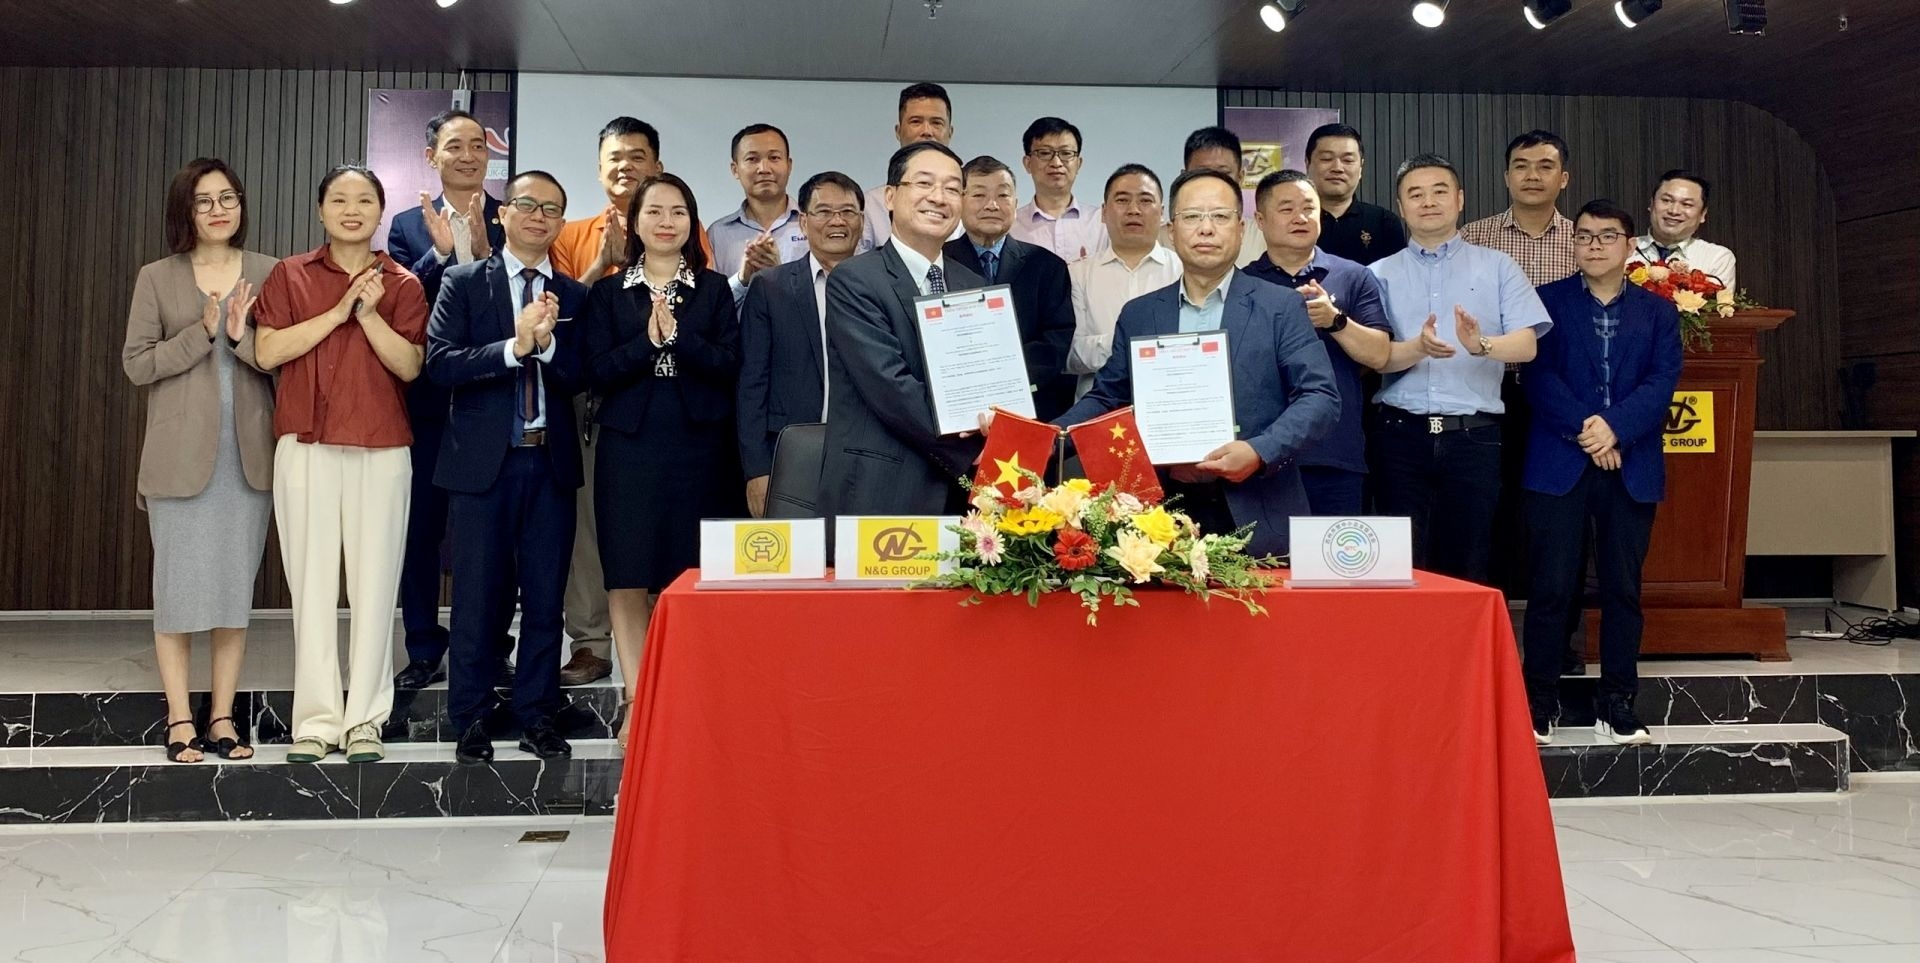 河内辅助工业企业协会与中国苏州市中小企业贸易促进协会之间合作协议签字仪式在河内举行。